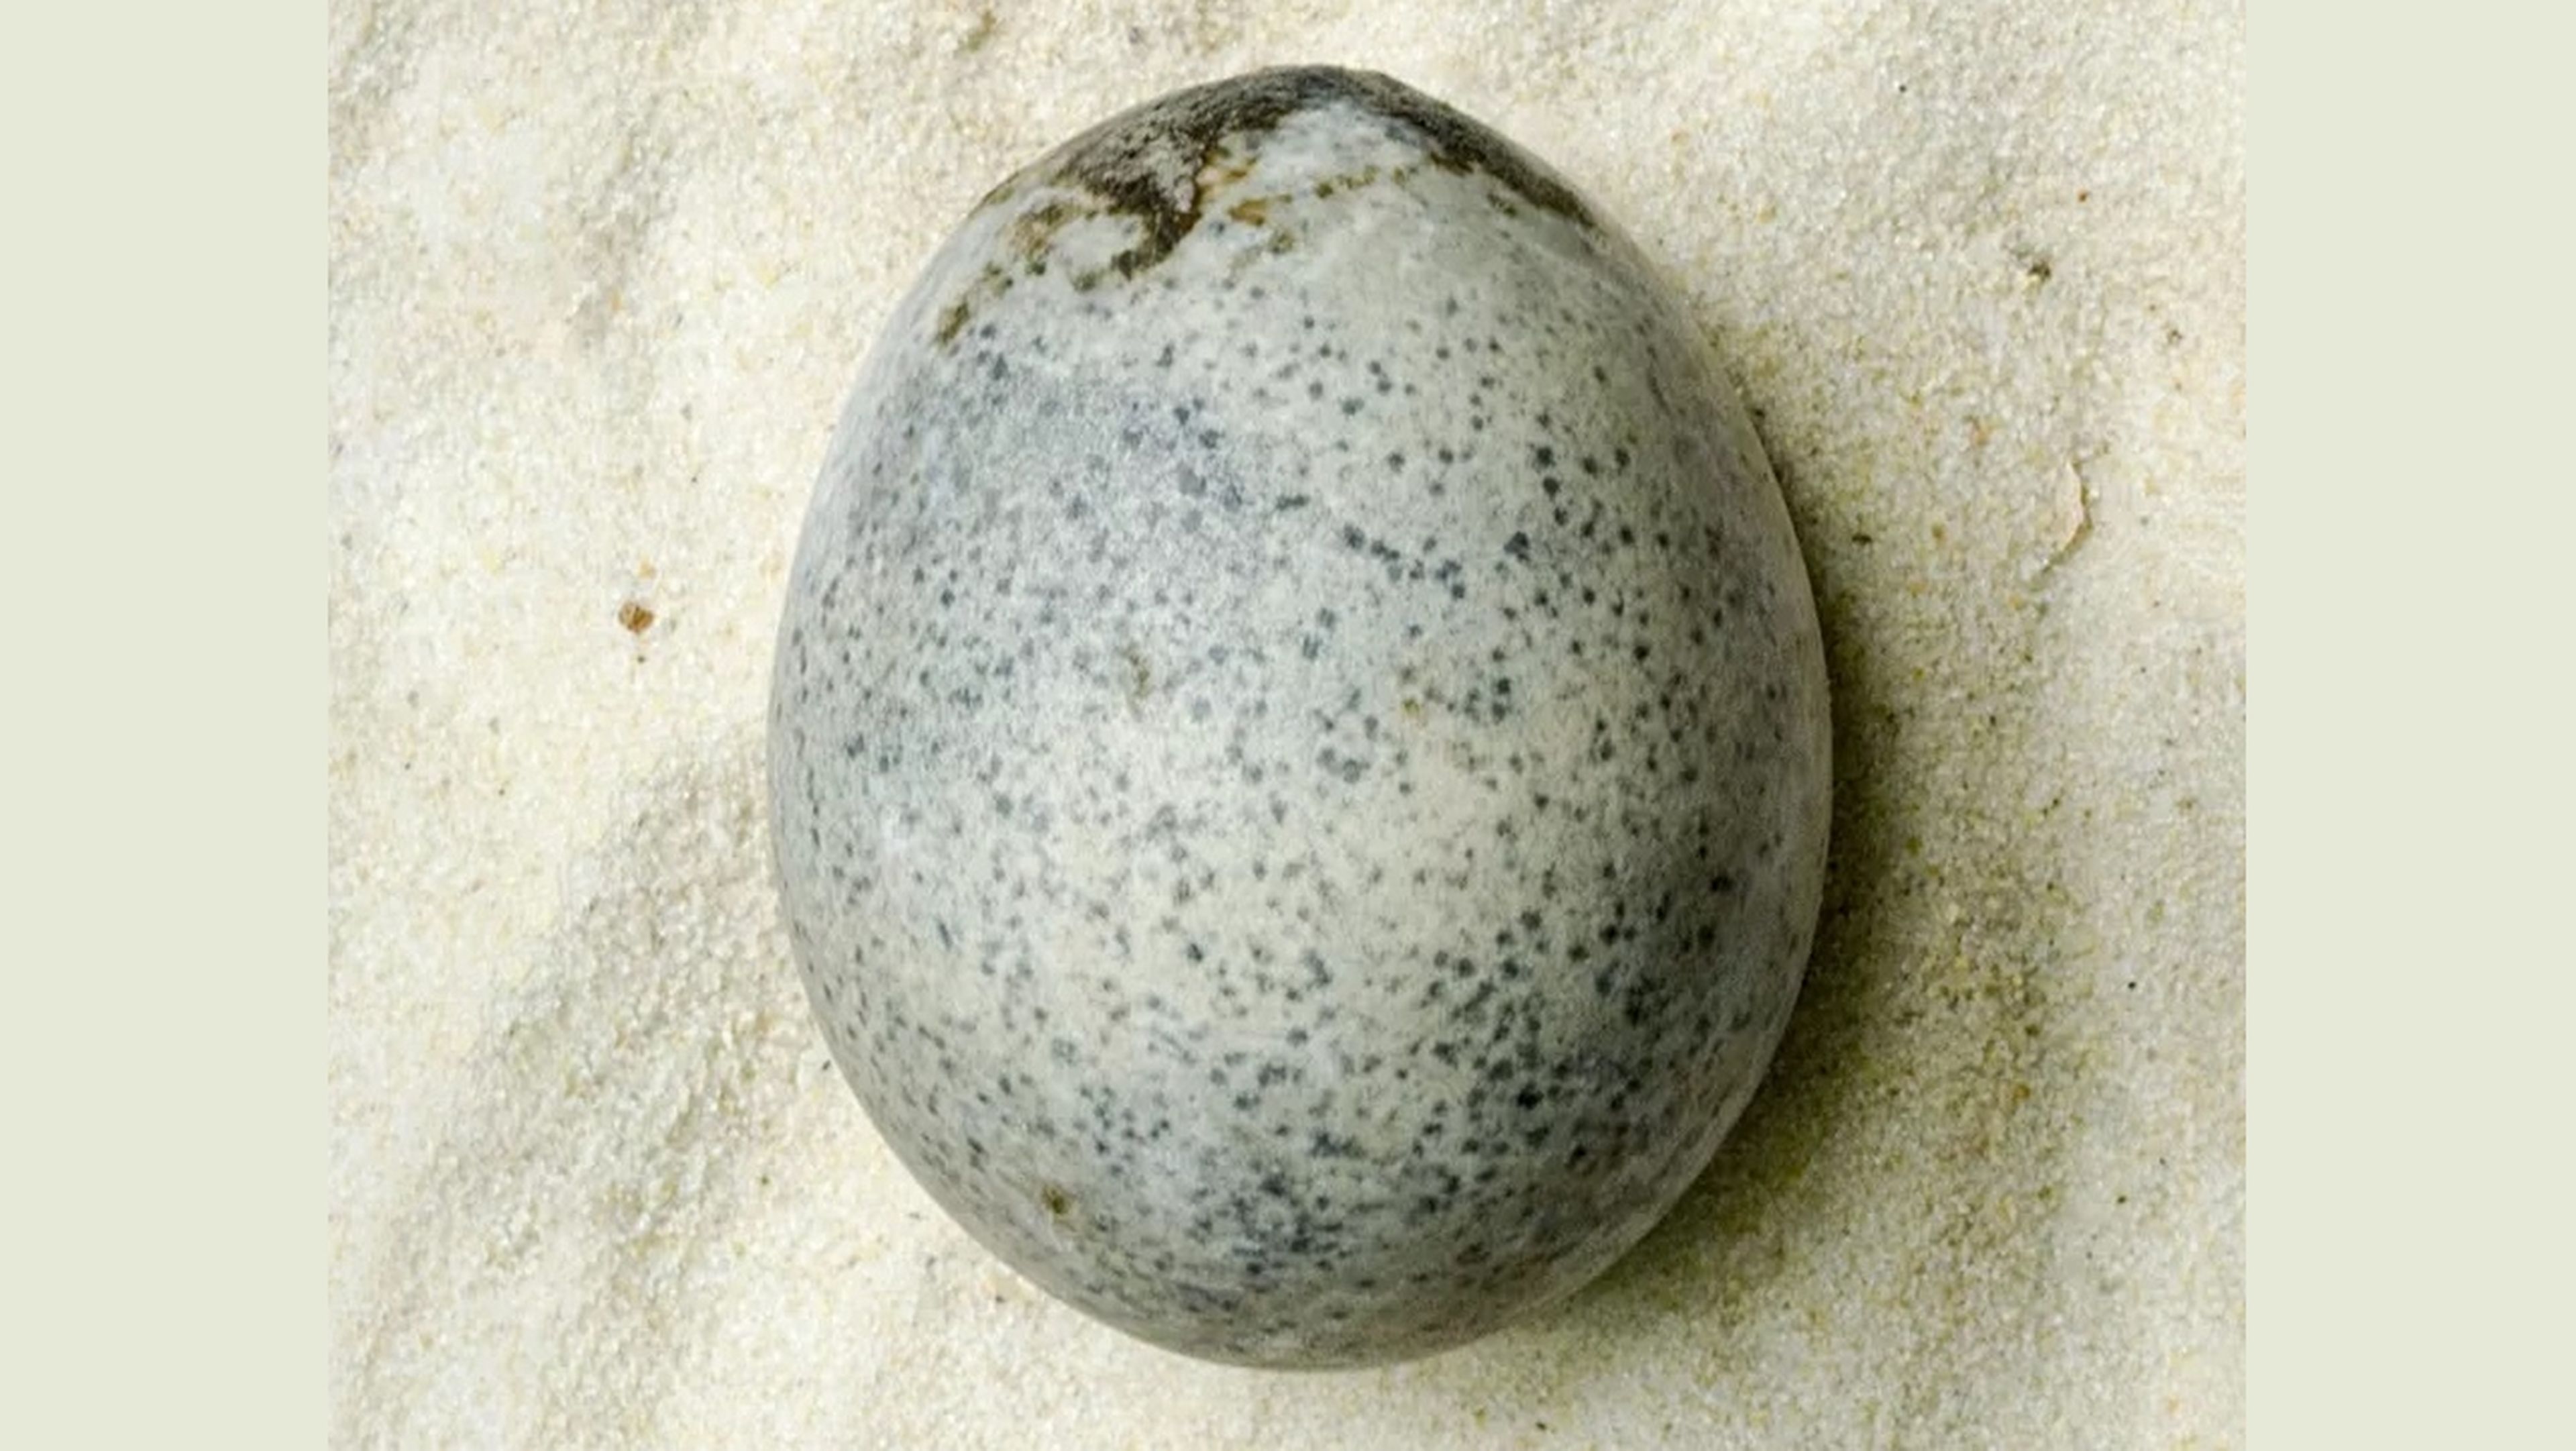 Después un huevo intacto de la época romana que aún conserva líquido en su interior, 1700 años después